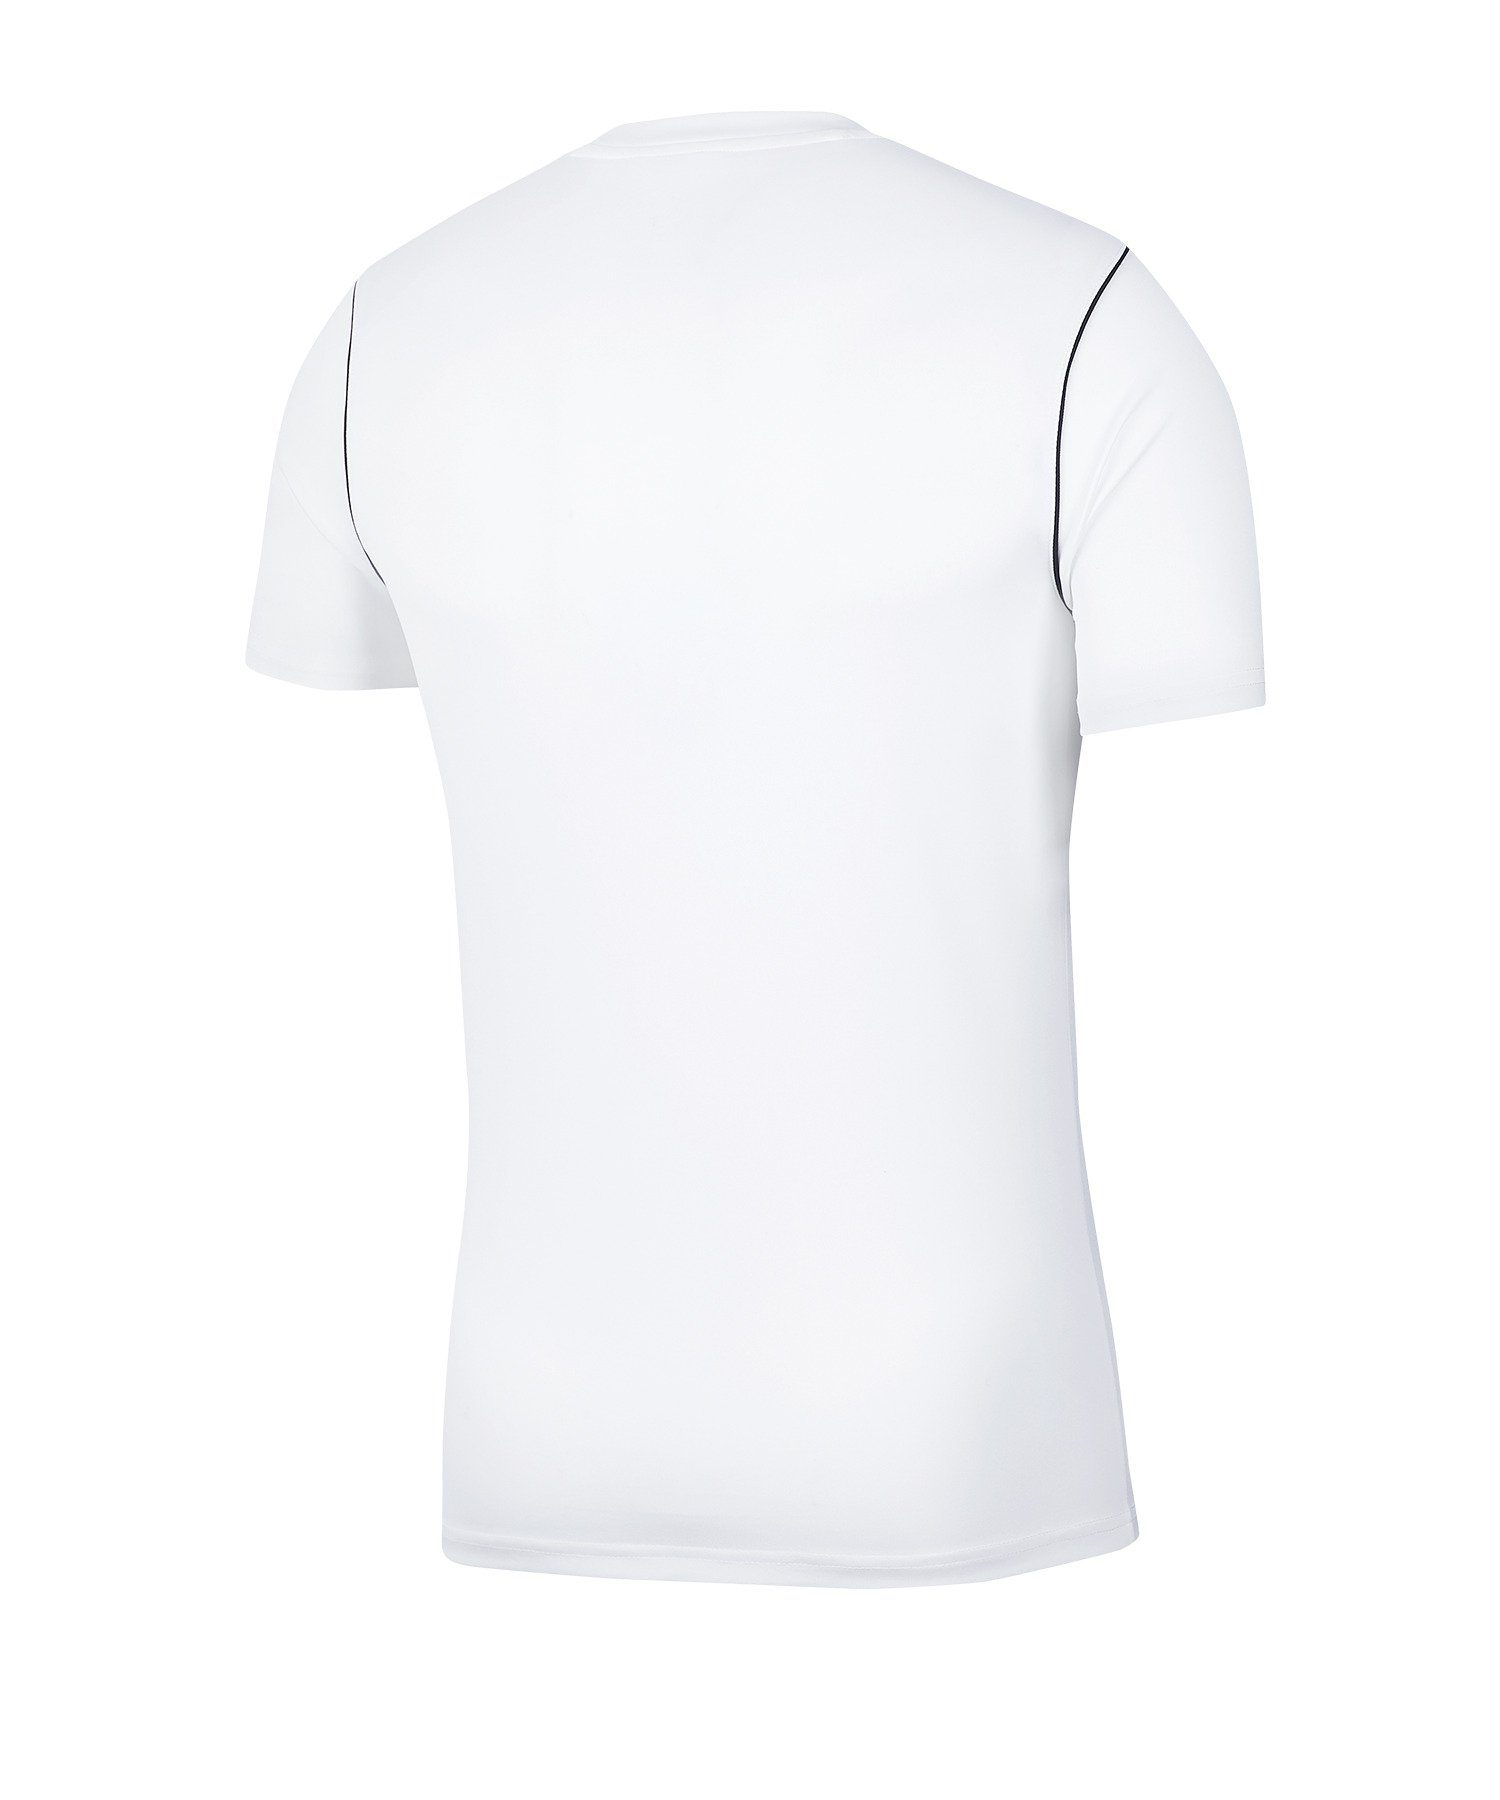 Nike T-Shirt Park 20 default Training Shirt weiss